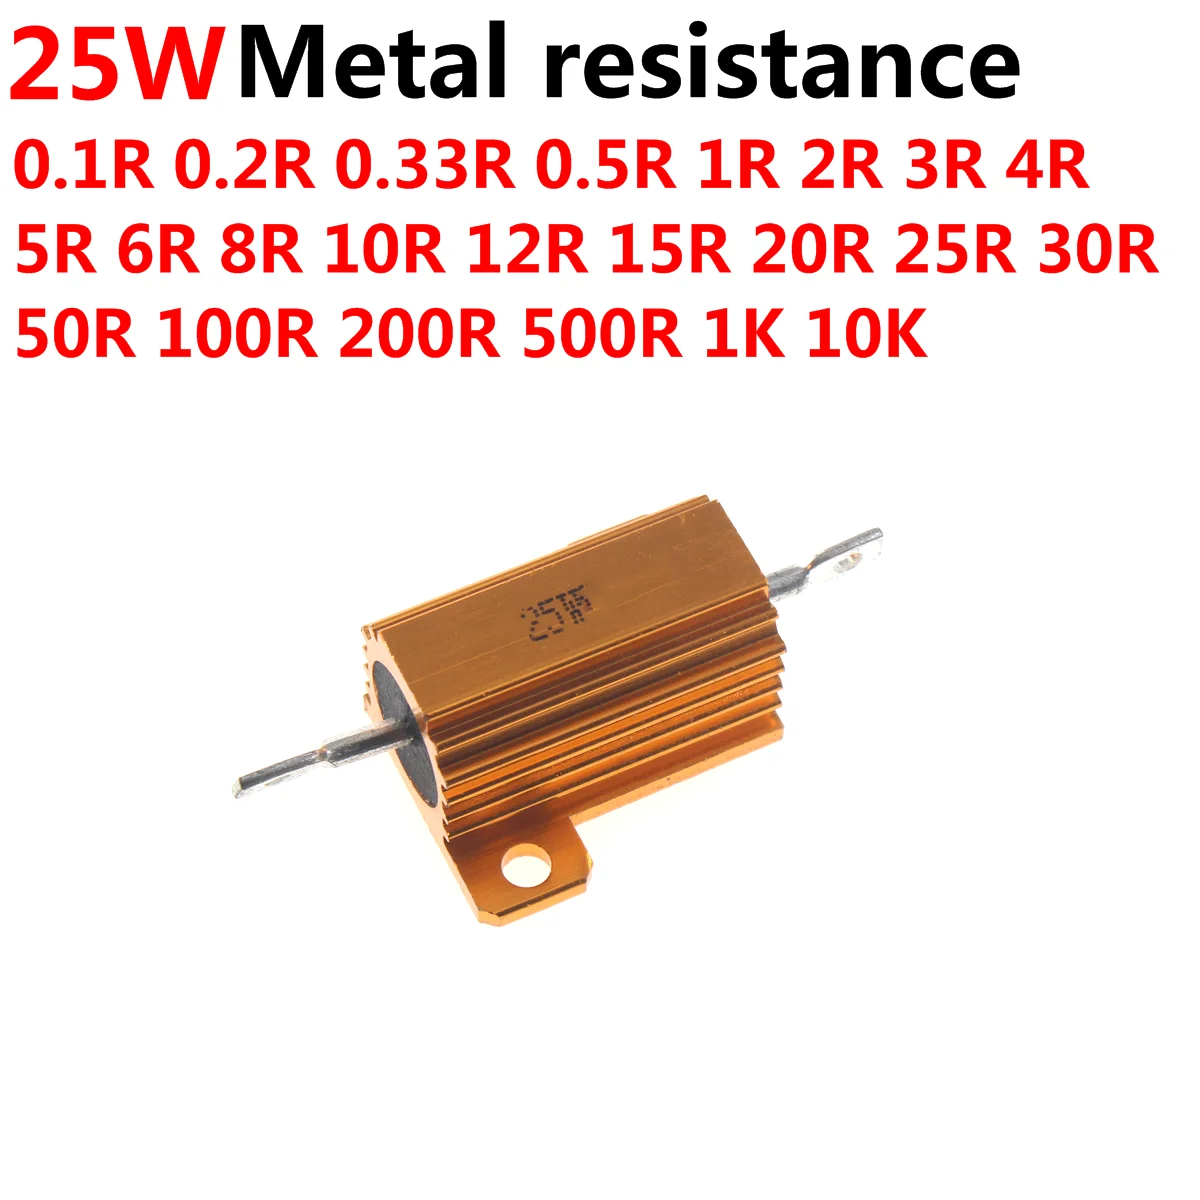 

5 шт. RX24 25 Вт алюминиевый мощный металлический корпус, внешний проволочный резистор 50R 100R 200R 500R 1K 2K 5K 10K Rohm